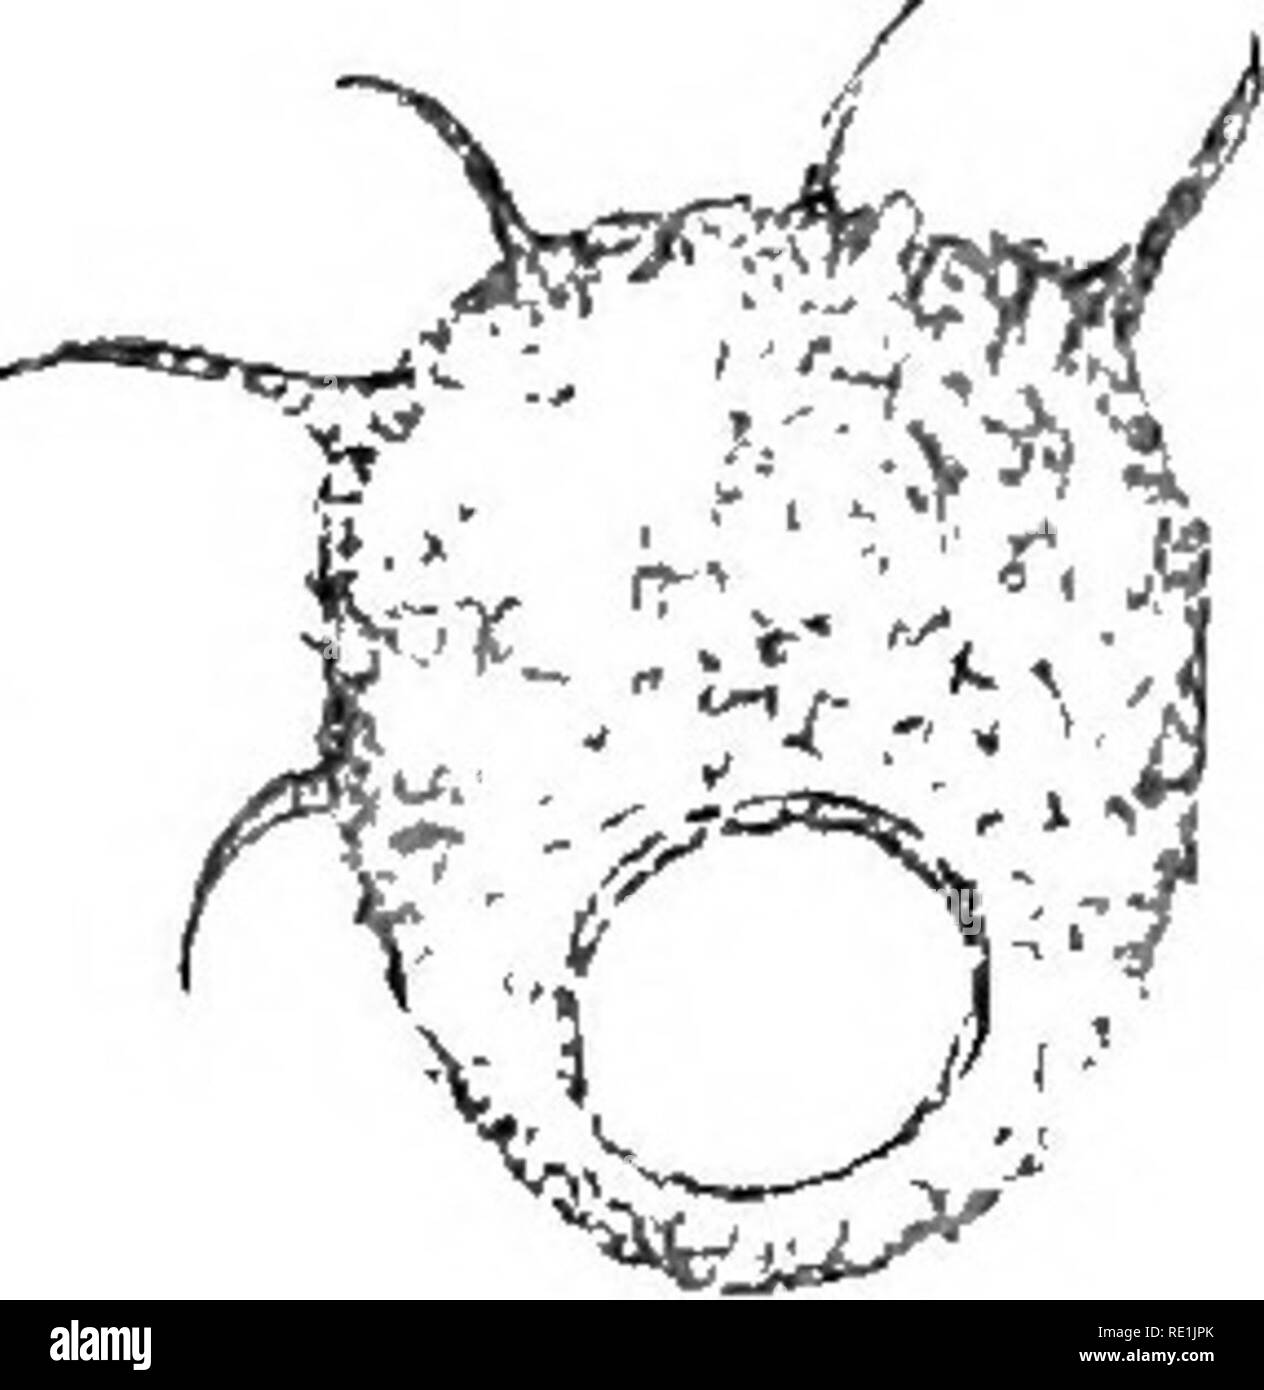 . Die britische Süßwasser und Rhizopoda Heliozoa. ; Rhizopoda Heliozoa; Süßwasser Tiere. DIFFLUGIA CONSTRICTA. .43 var. ecornis (Ehrenb.) Leidj, oft ähnlich sind die anerkannten Art D. constricta. In beiden Arten der Test chitinous ist und mit anderen Teilchen mehr oder weniger fallen; wenn diese bestehen aus eng-set Sand oder Silikatischen Platten ganz ausblenden Der chitinous Membran und eine graue Farbe auf die Probe, es wird identifiziert mit D. conatricta; wenn jedoch die anhängenden Angelegenheit ist mehr oder weniger verstreut, so dass Teile des chitinous Membran ausgesetzt, und der Test ist, o Stockfoto